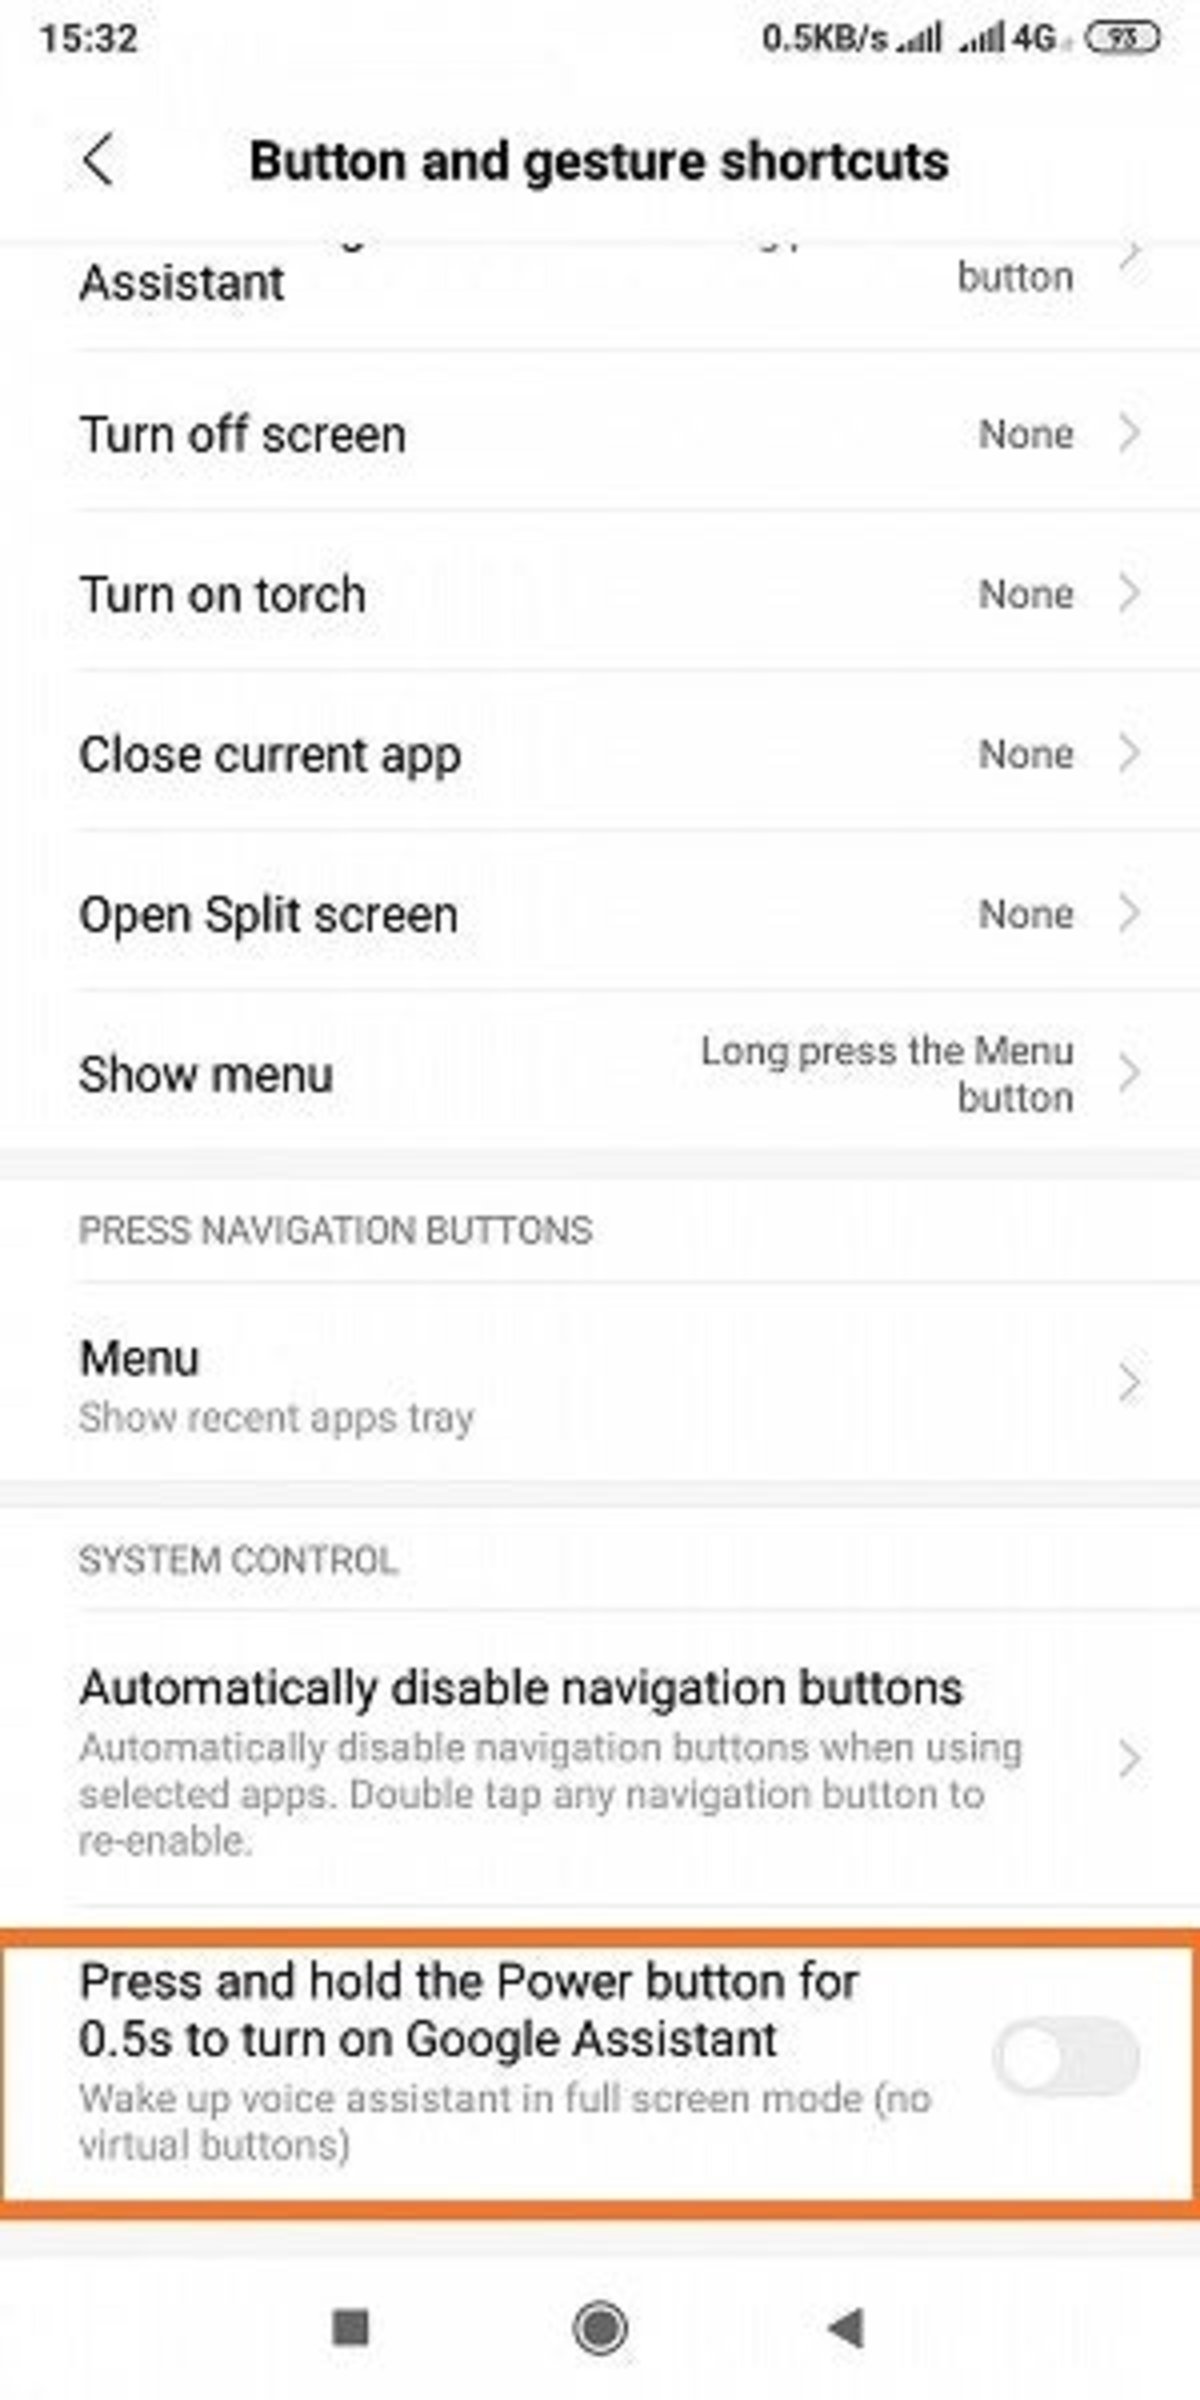 actualización de MIUI 10 añade acceso directo a Google Assistant